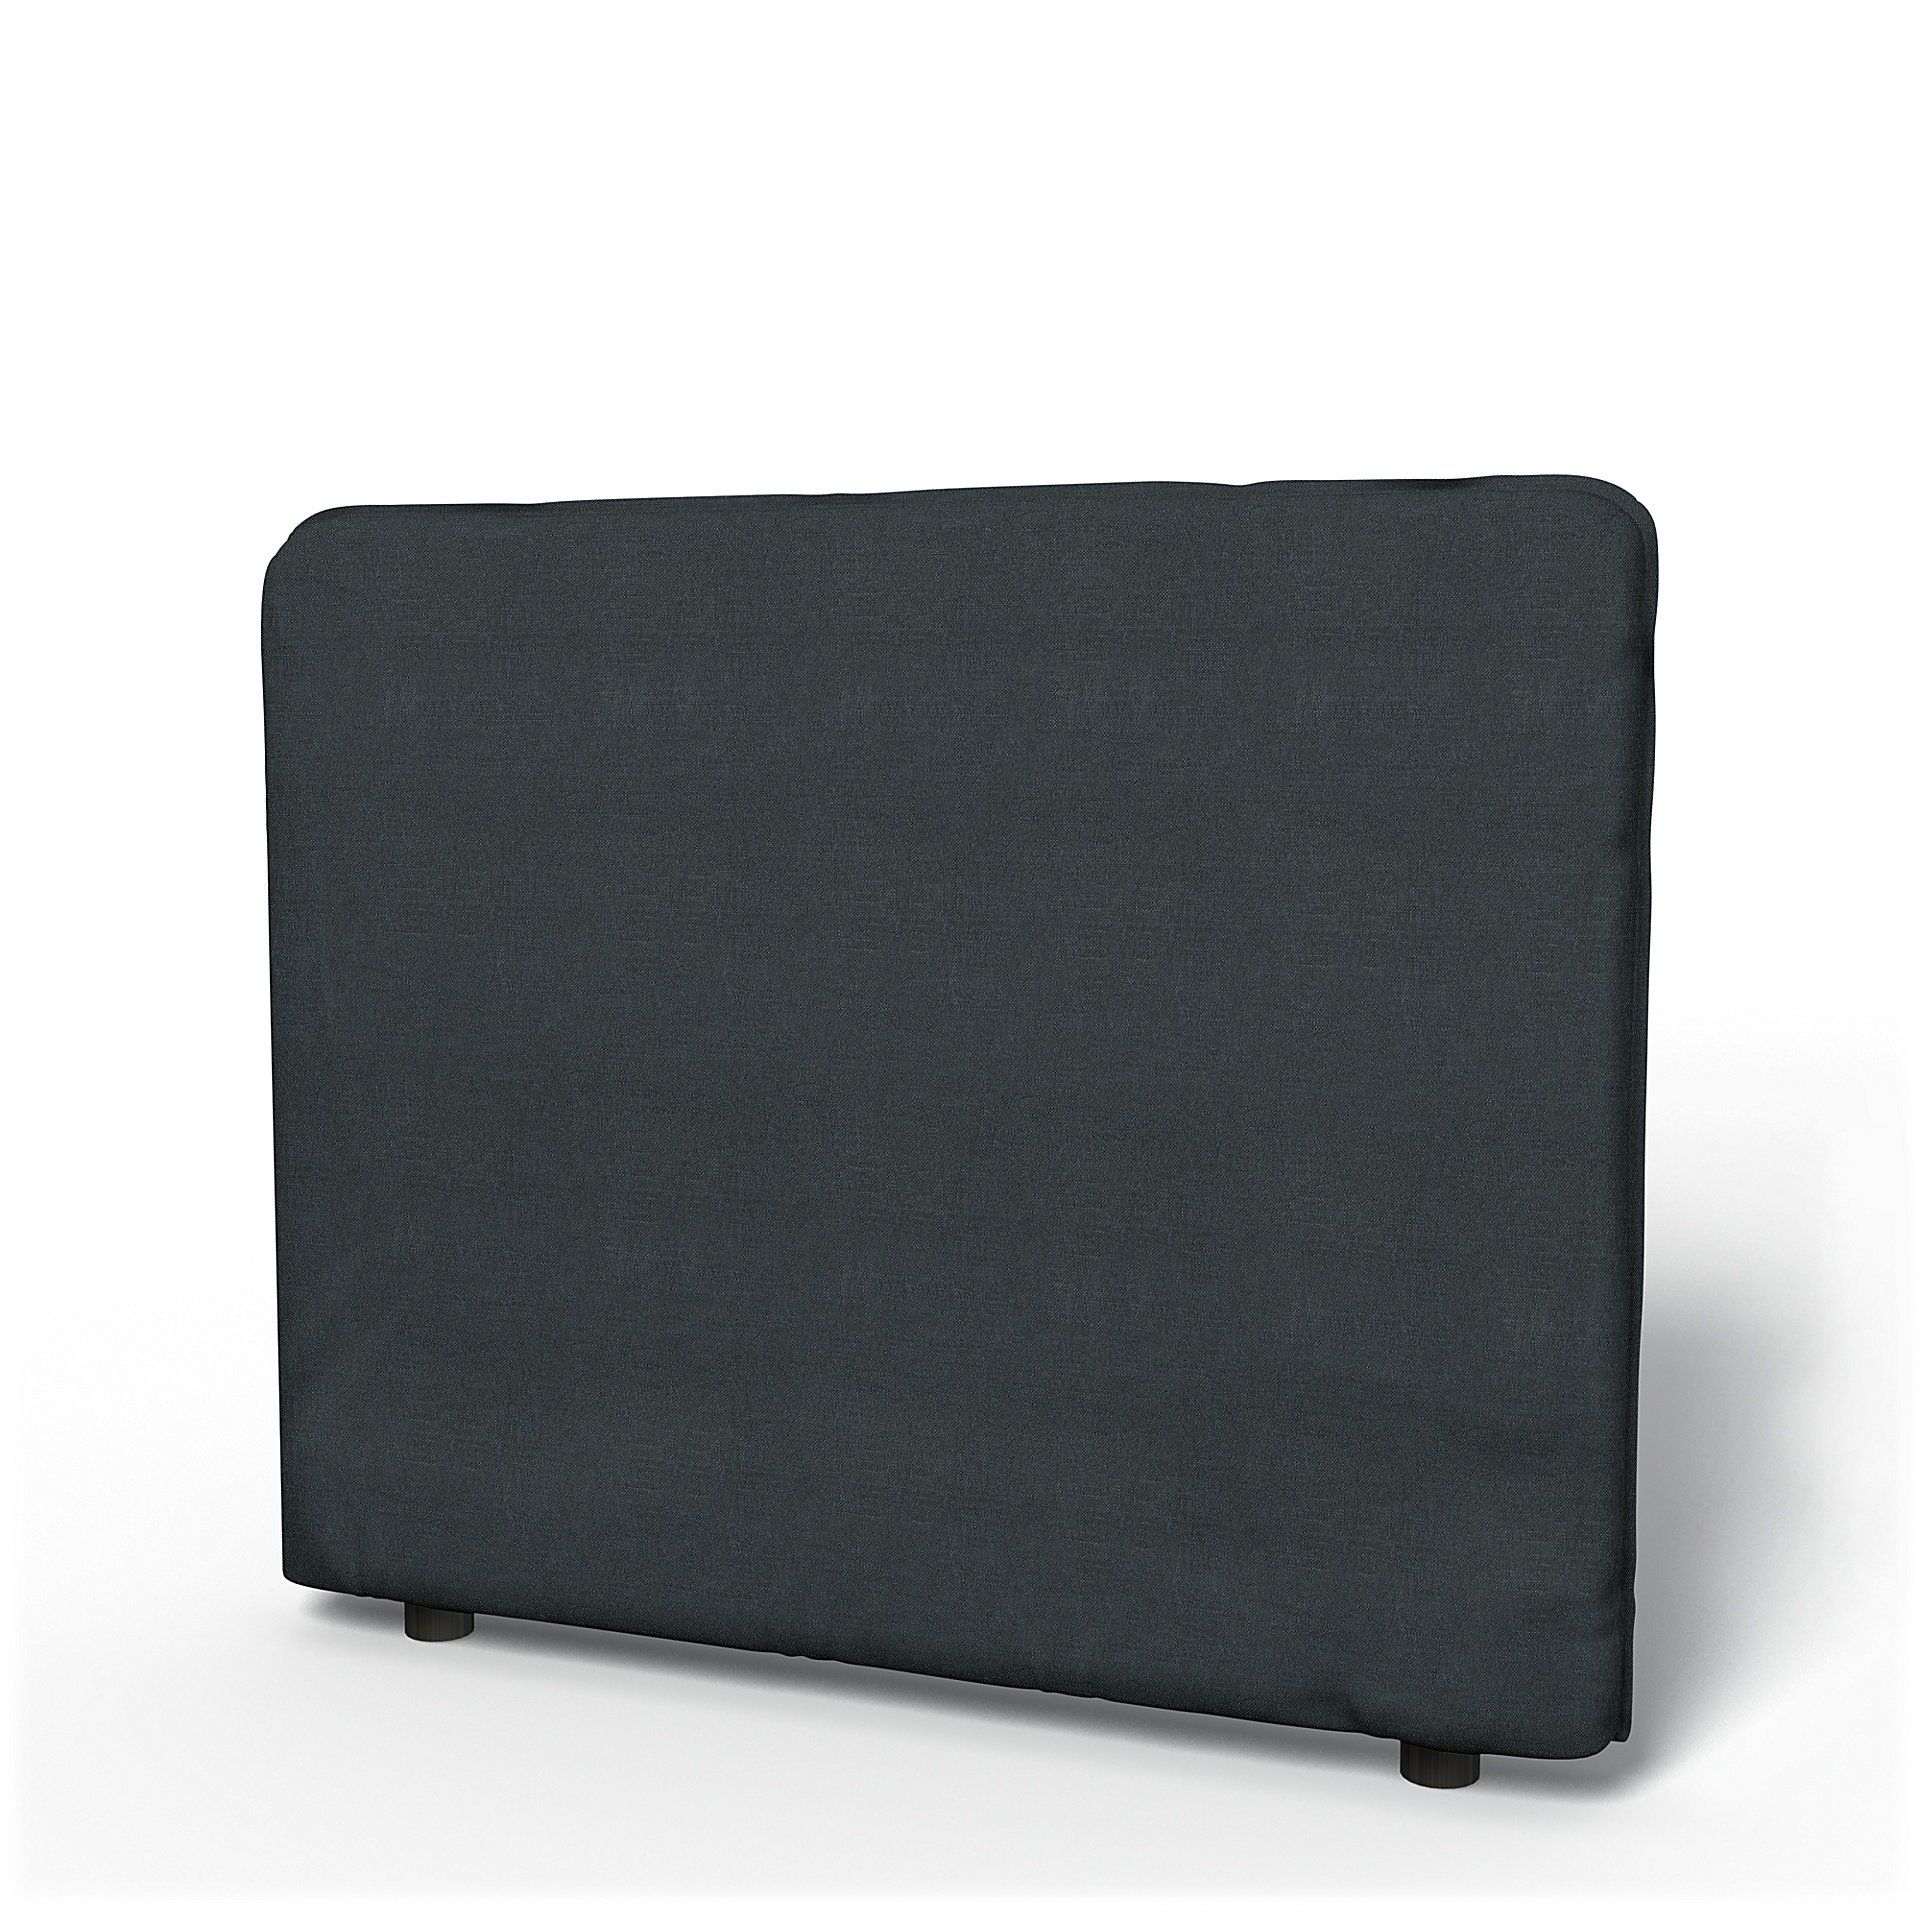 IKEA - Vallentuna Low Backrest Cover 100x80cm 39x32in, Graphite Grey, Linen - Bemz